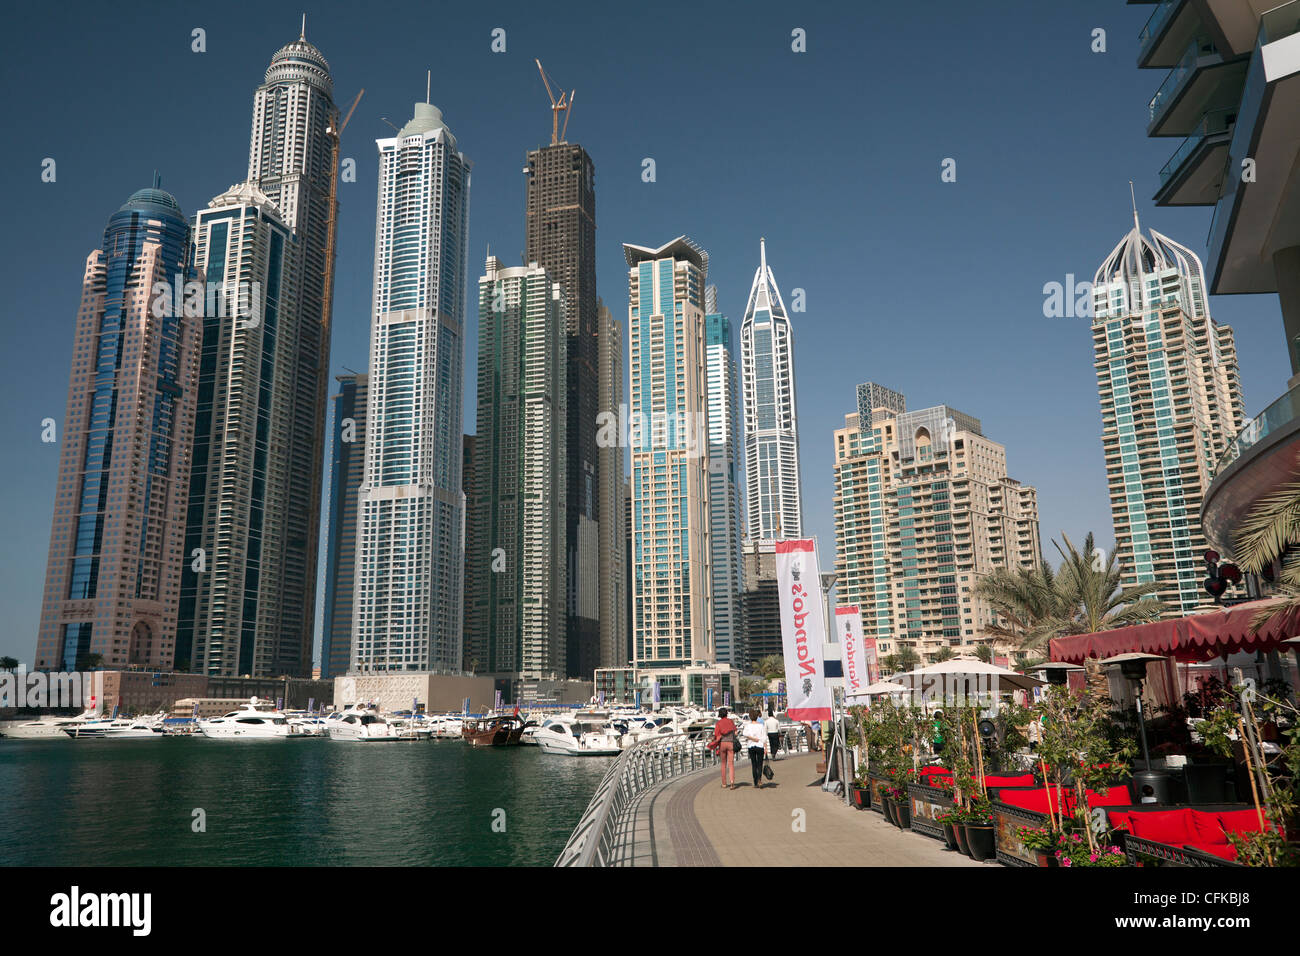 Die Wolkenkratzer des Bereichs "Dubai Marina" (Dubai - Vereinigte Arabische Emirate). Les Gratte-Ciel du quartier "Dubai Marina". Stockfoto